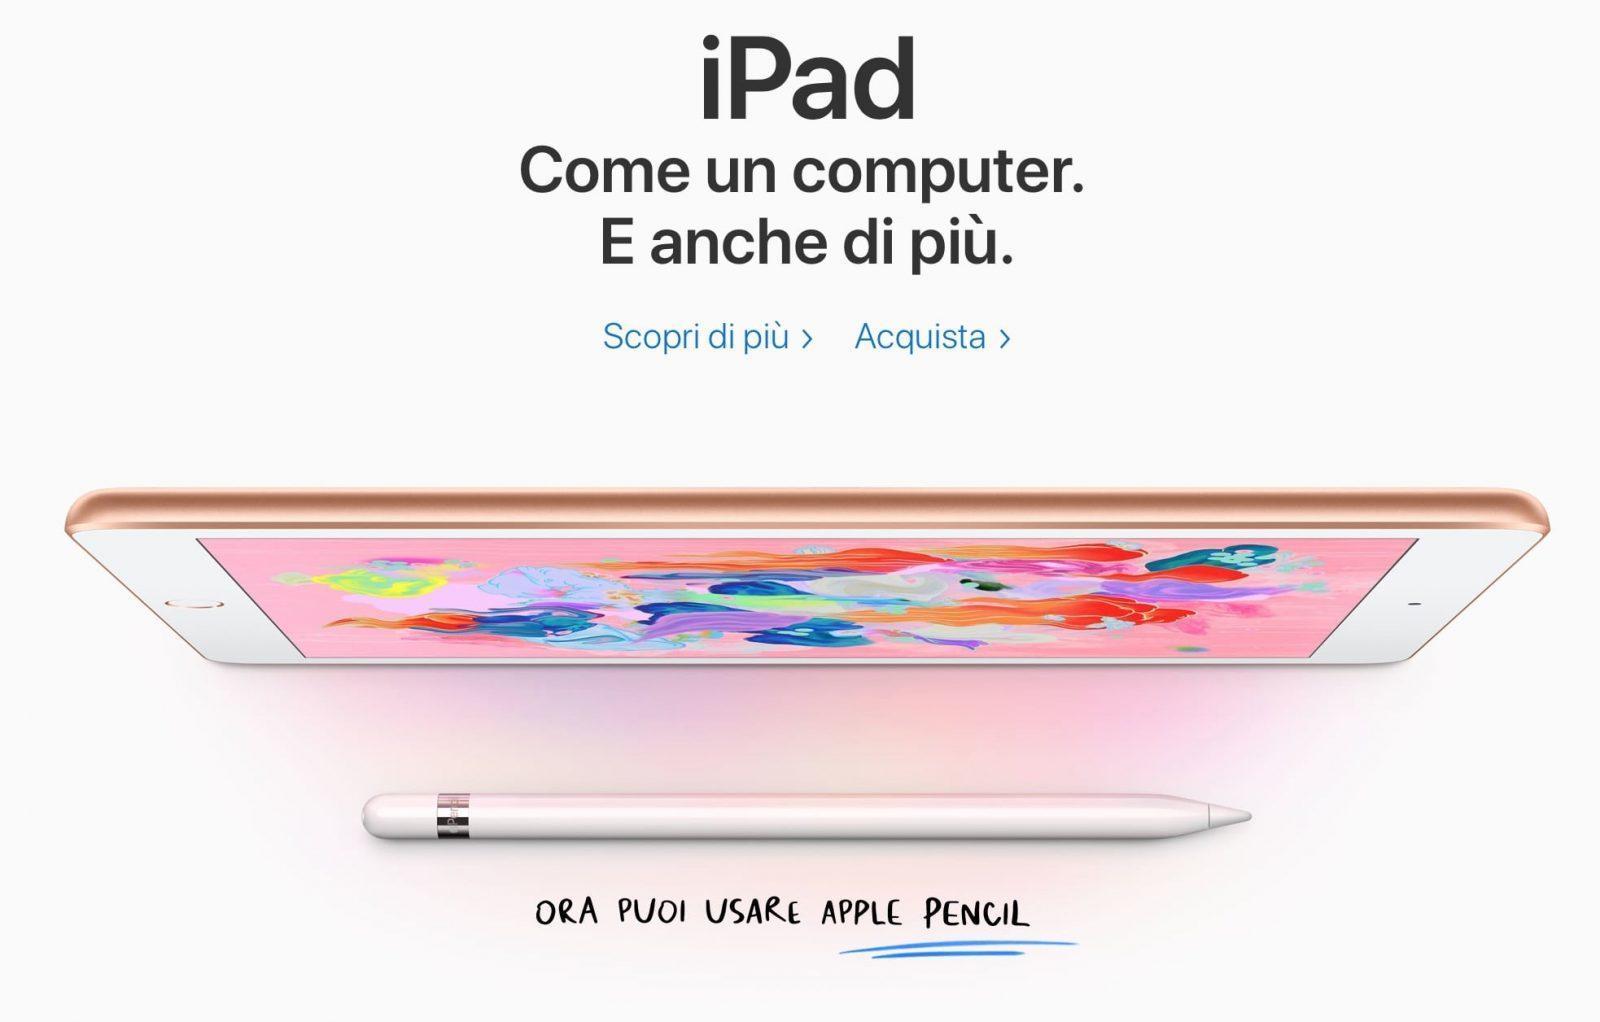 iPad 2018 scheda tecnica